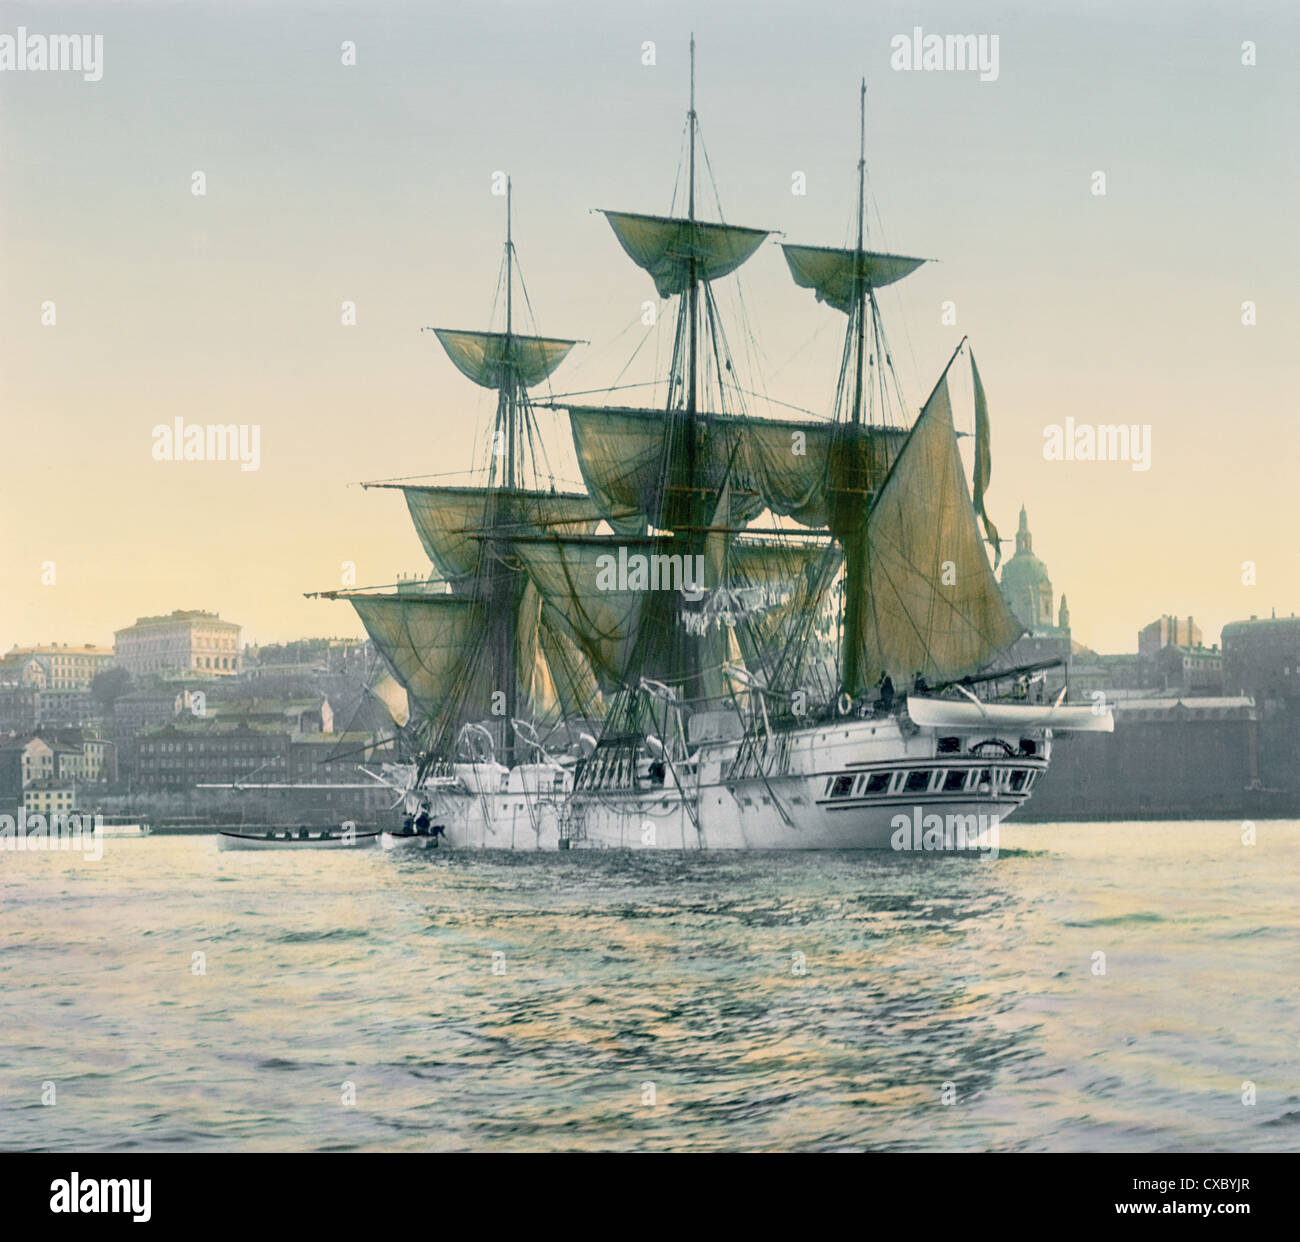 Photo colorisée d'un voilier à trois mâts dans le port de Stockholm, Stockholm, Suède, 1902. Le dôme de l'église Katarina est partiellement visible à droite du navire. (Photo de Burton Holmes) Banque D'Images